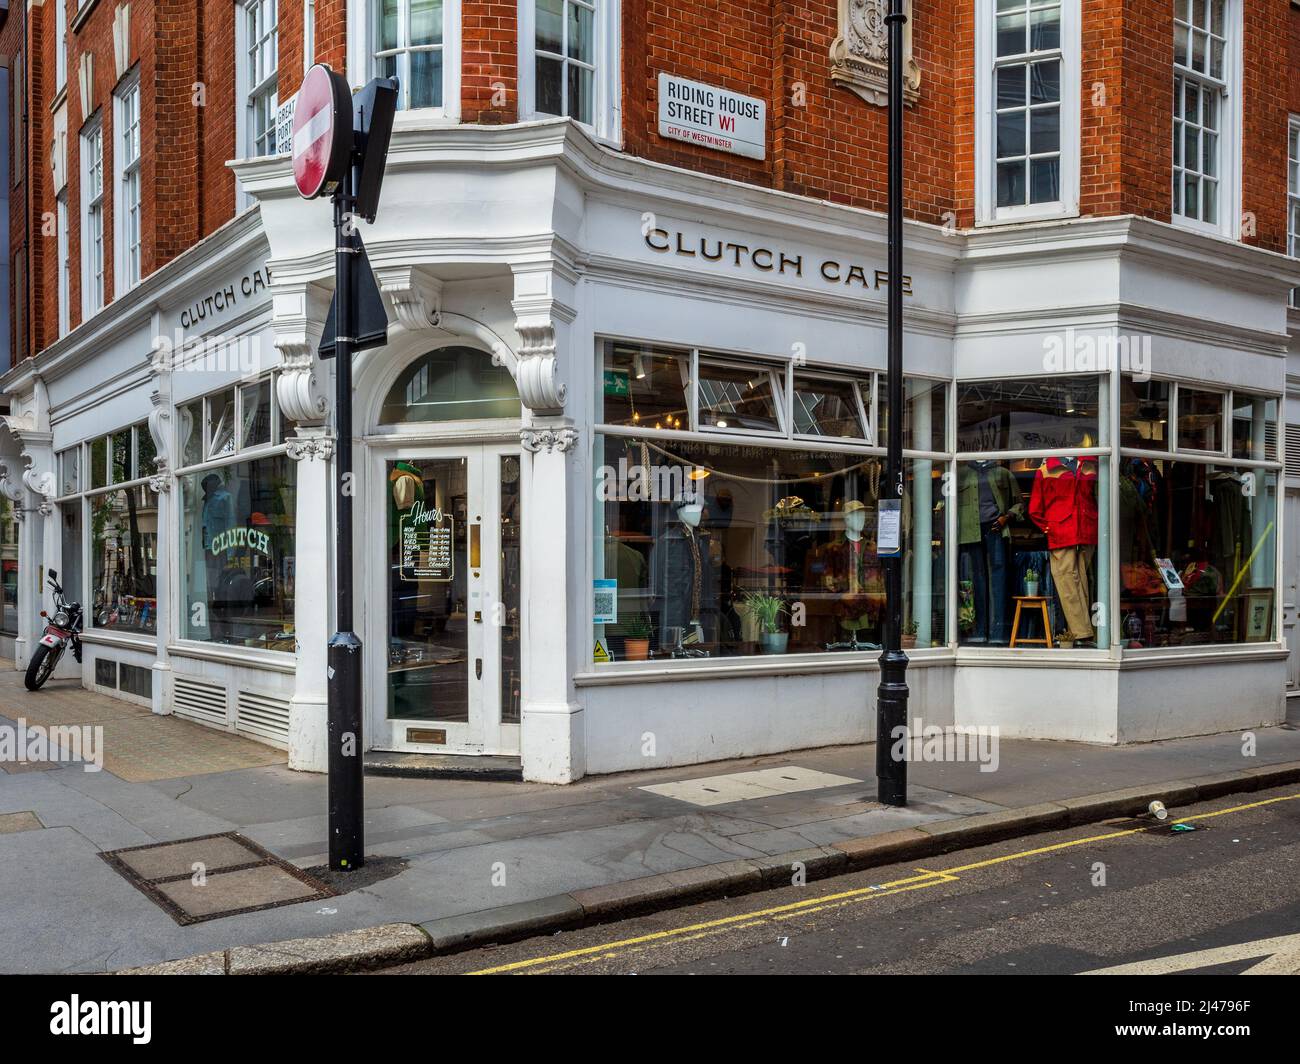 Clutch Cafe London - Tienda de ropa que vende marcas japonesas y ropa de estilo urbano - Tienda insignia de Londres ubicada en 78-80 Great Portland St. Foto de stock